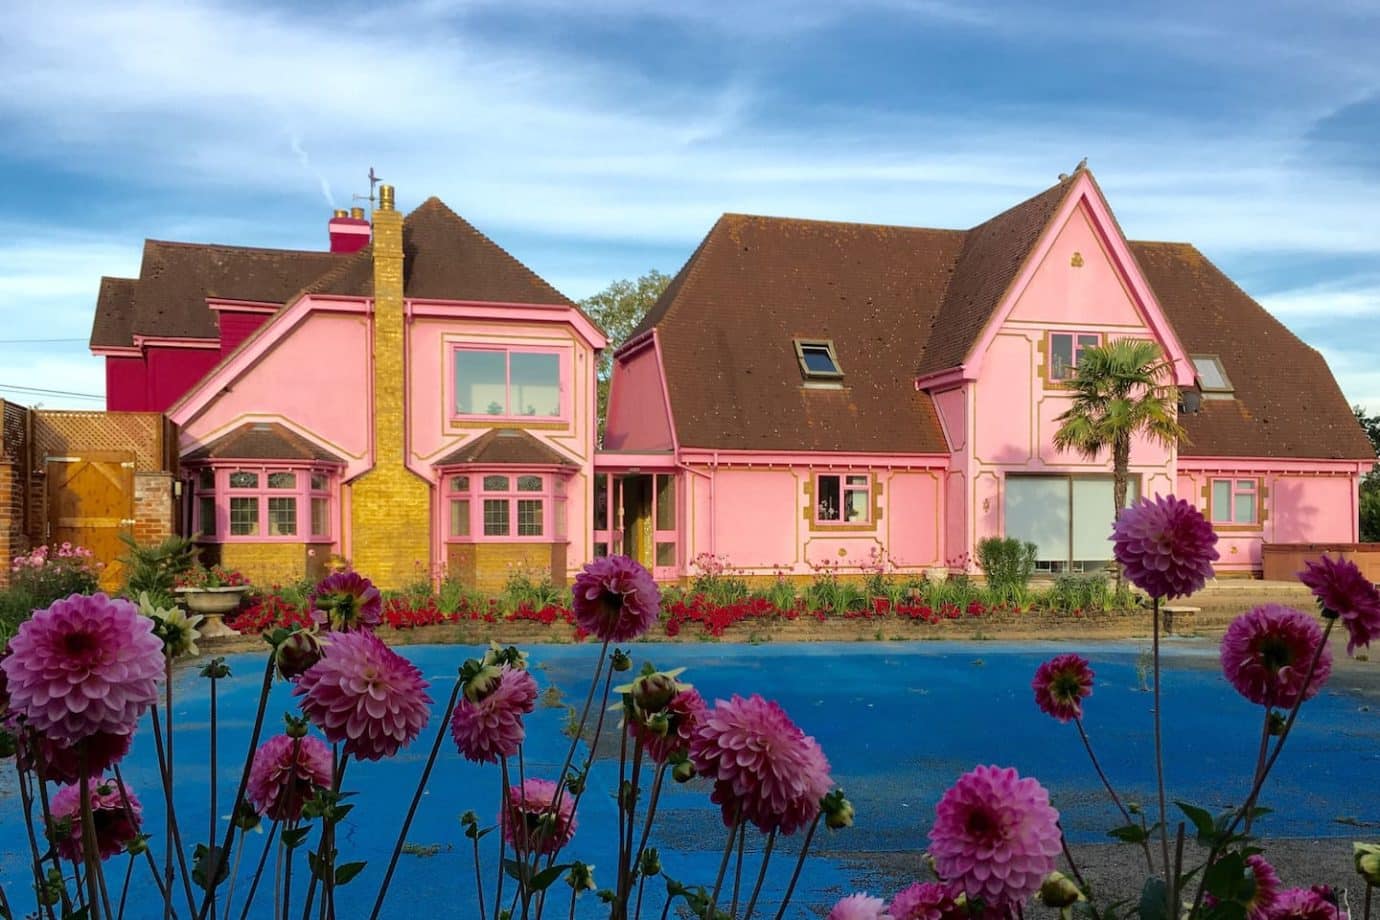 Airbnb vous propose de louer la maison la plus kitsch au monde, en Angleterre !